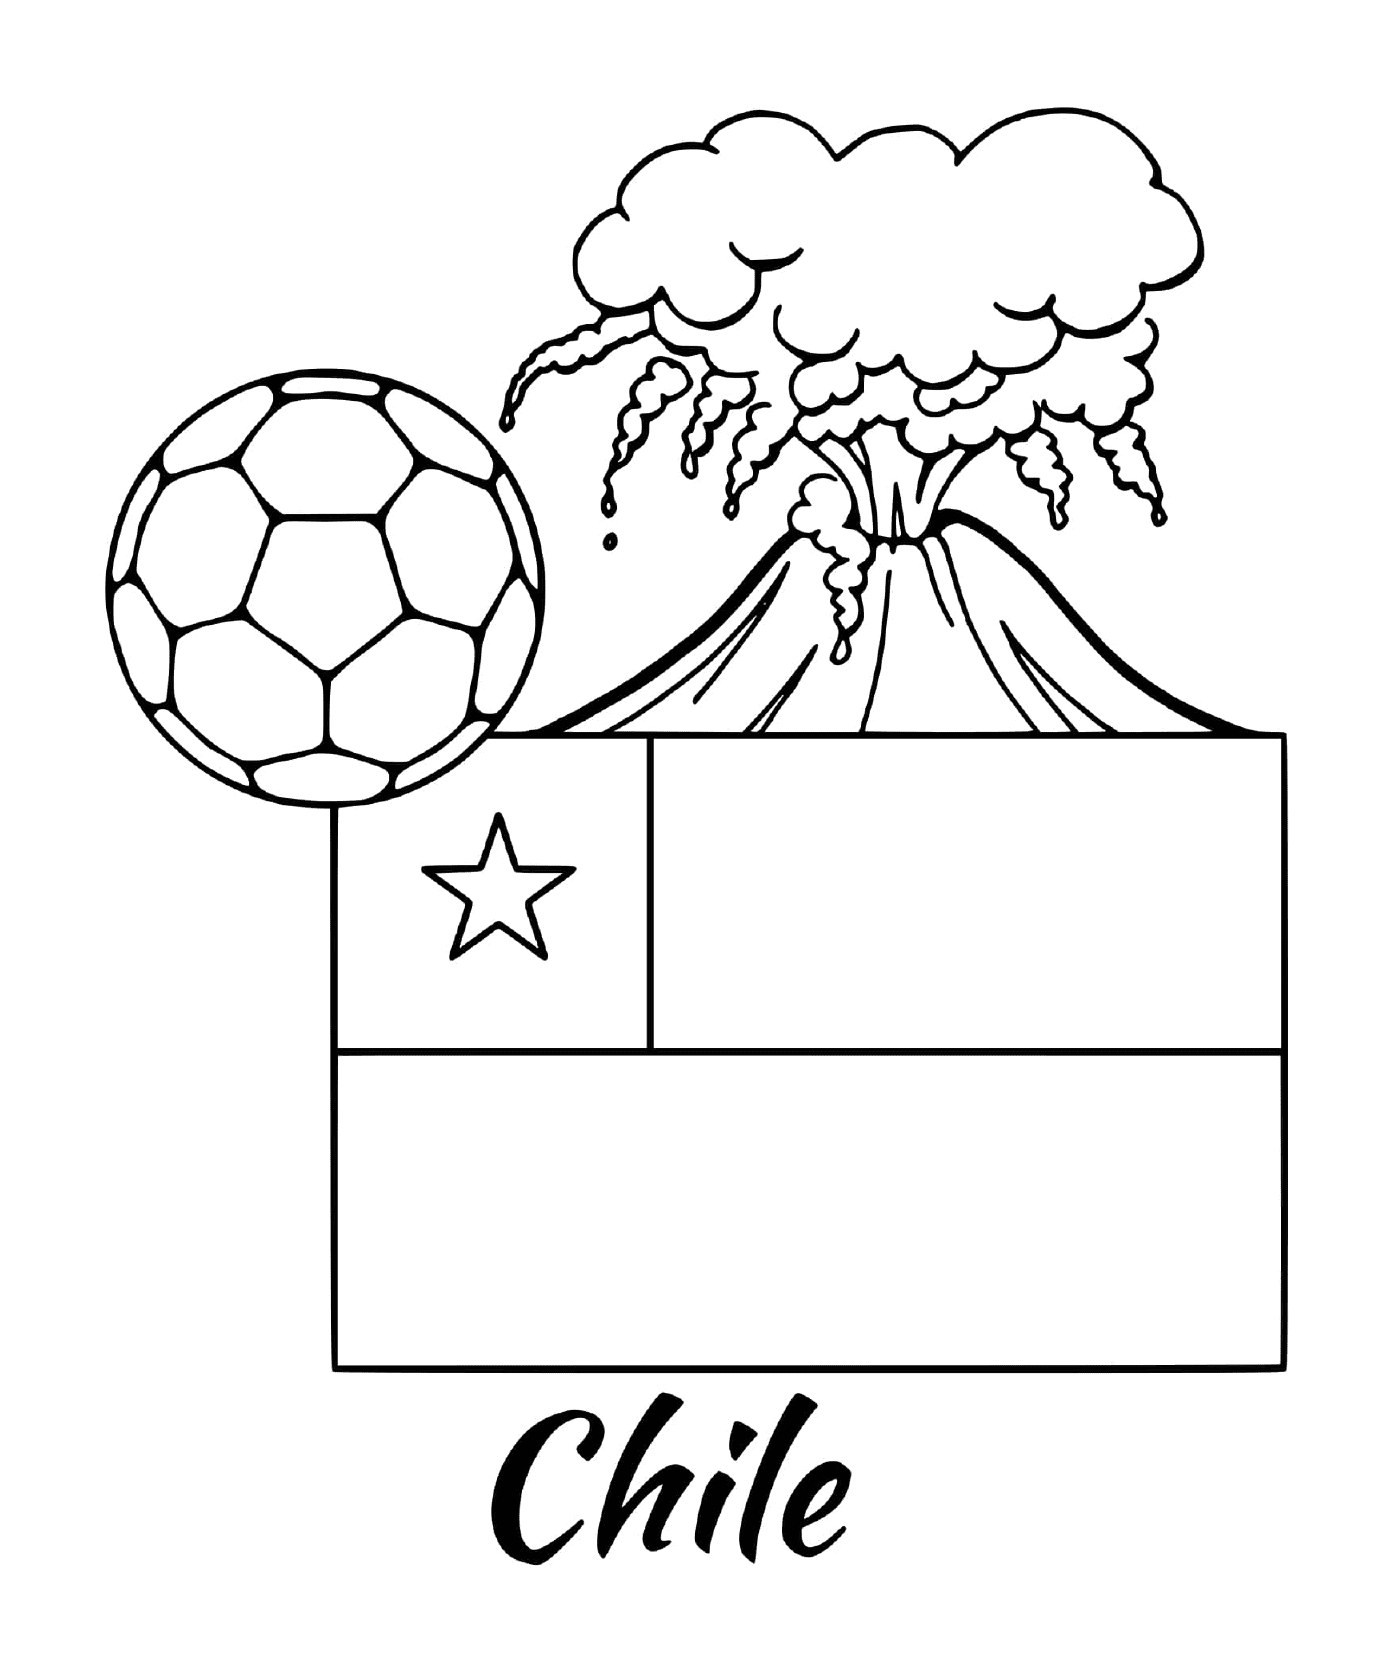  चिली, ज्वालामुखी के ध्वज 